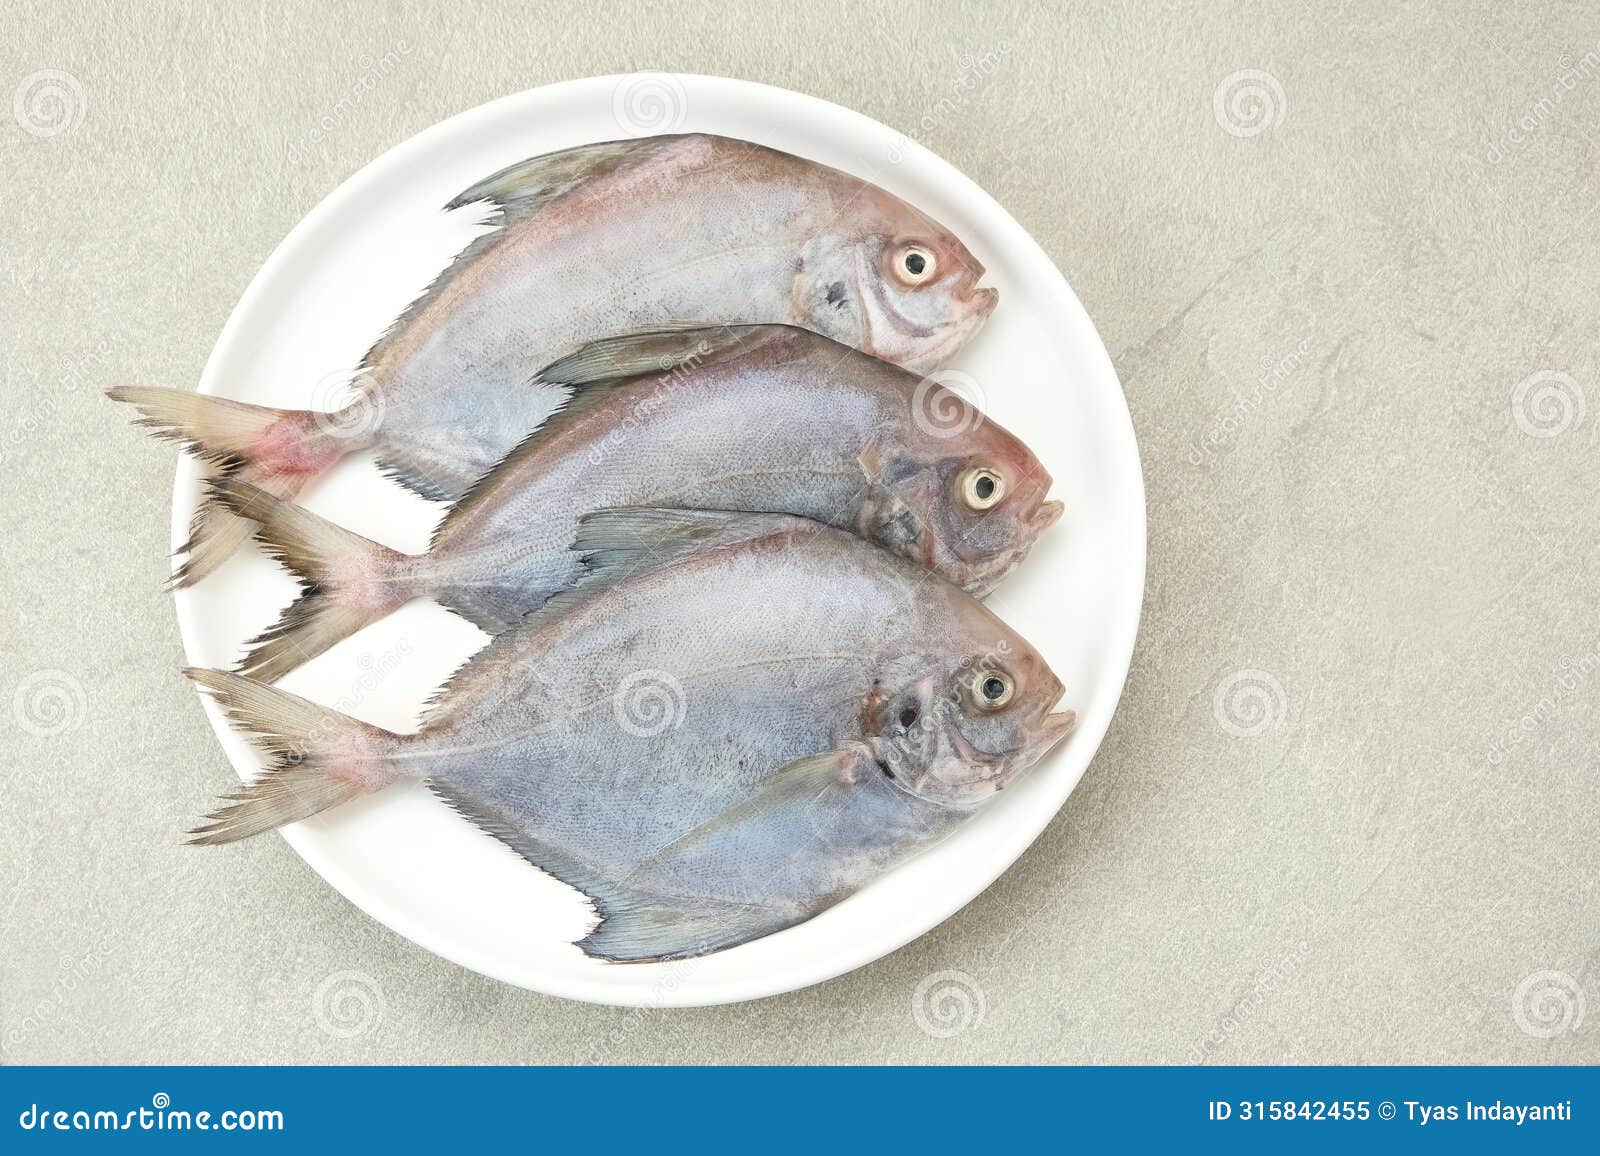 ikan dorang or ikan bawal putih